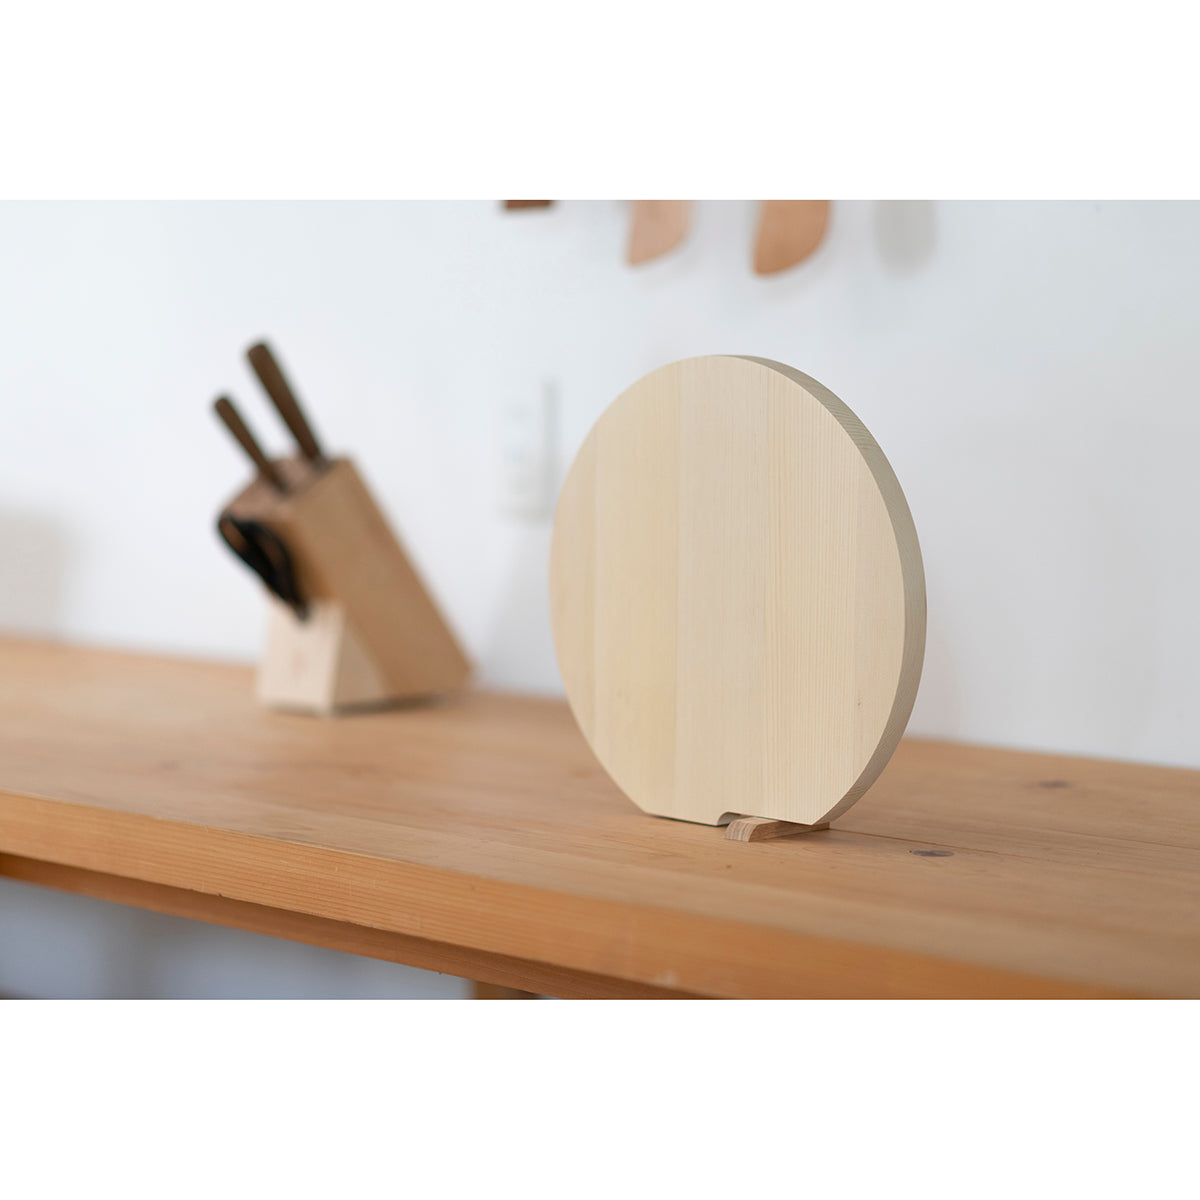 丸いまな板 青森ひばの丸まな板 スタンド付 M 丸型まな板 – 梅沢木材工芸社